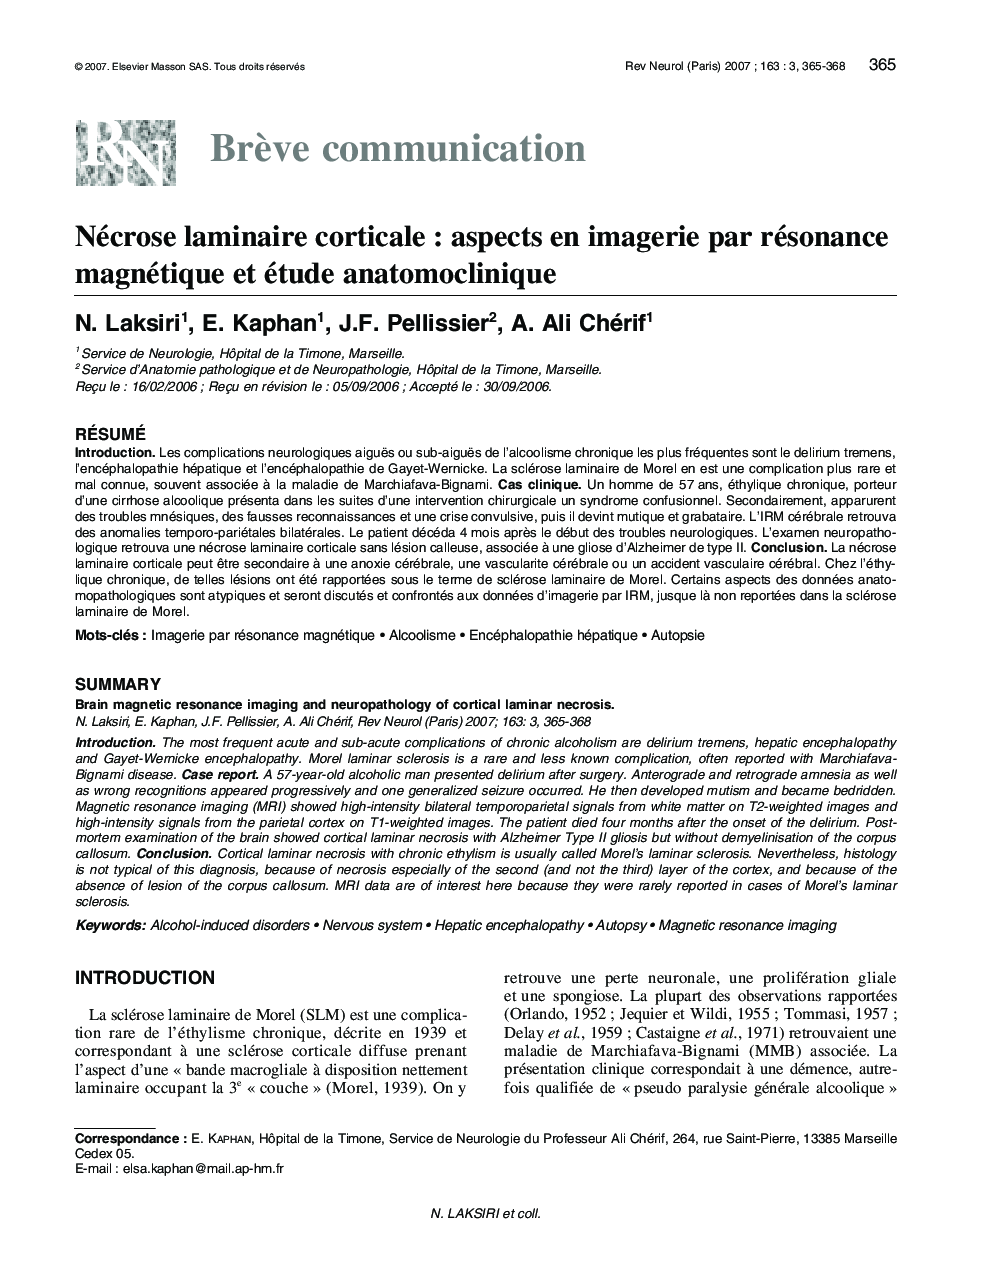 Nécrose laminaire corticale : aspects en imagerie par résonance magnétique et étude anatomoclinique